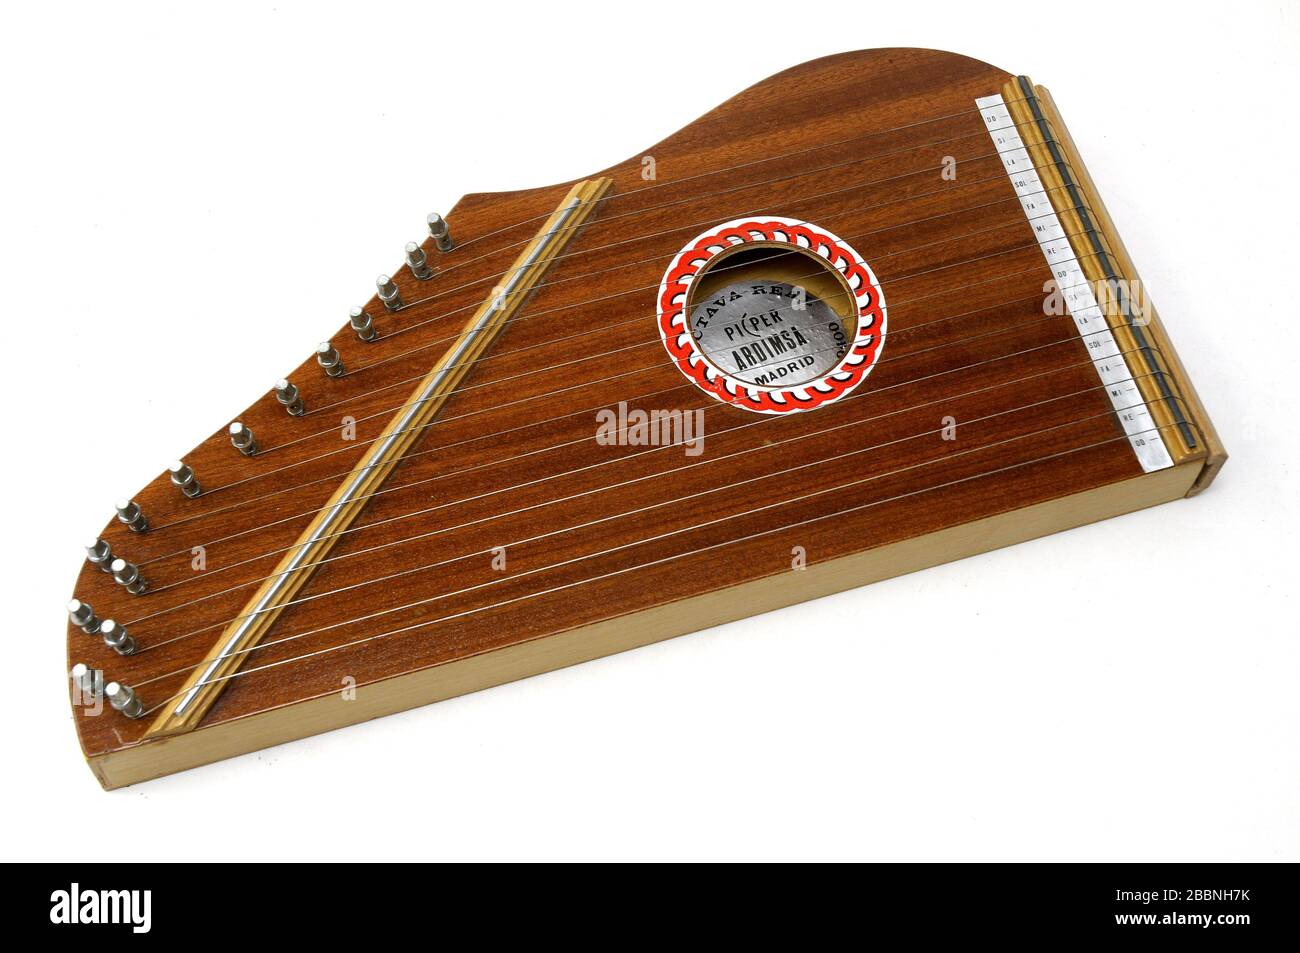 Musikinstrument, Zither, flacher Holzklangkasten mit zahlreichen Saiten, die darüber gespannt sind Stockfoto